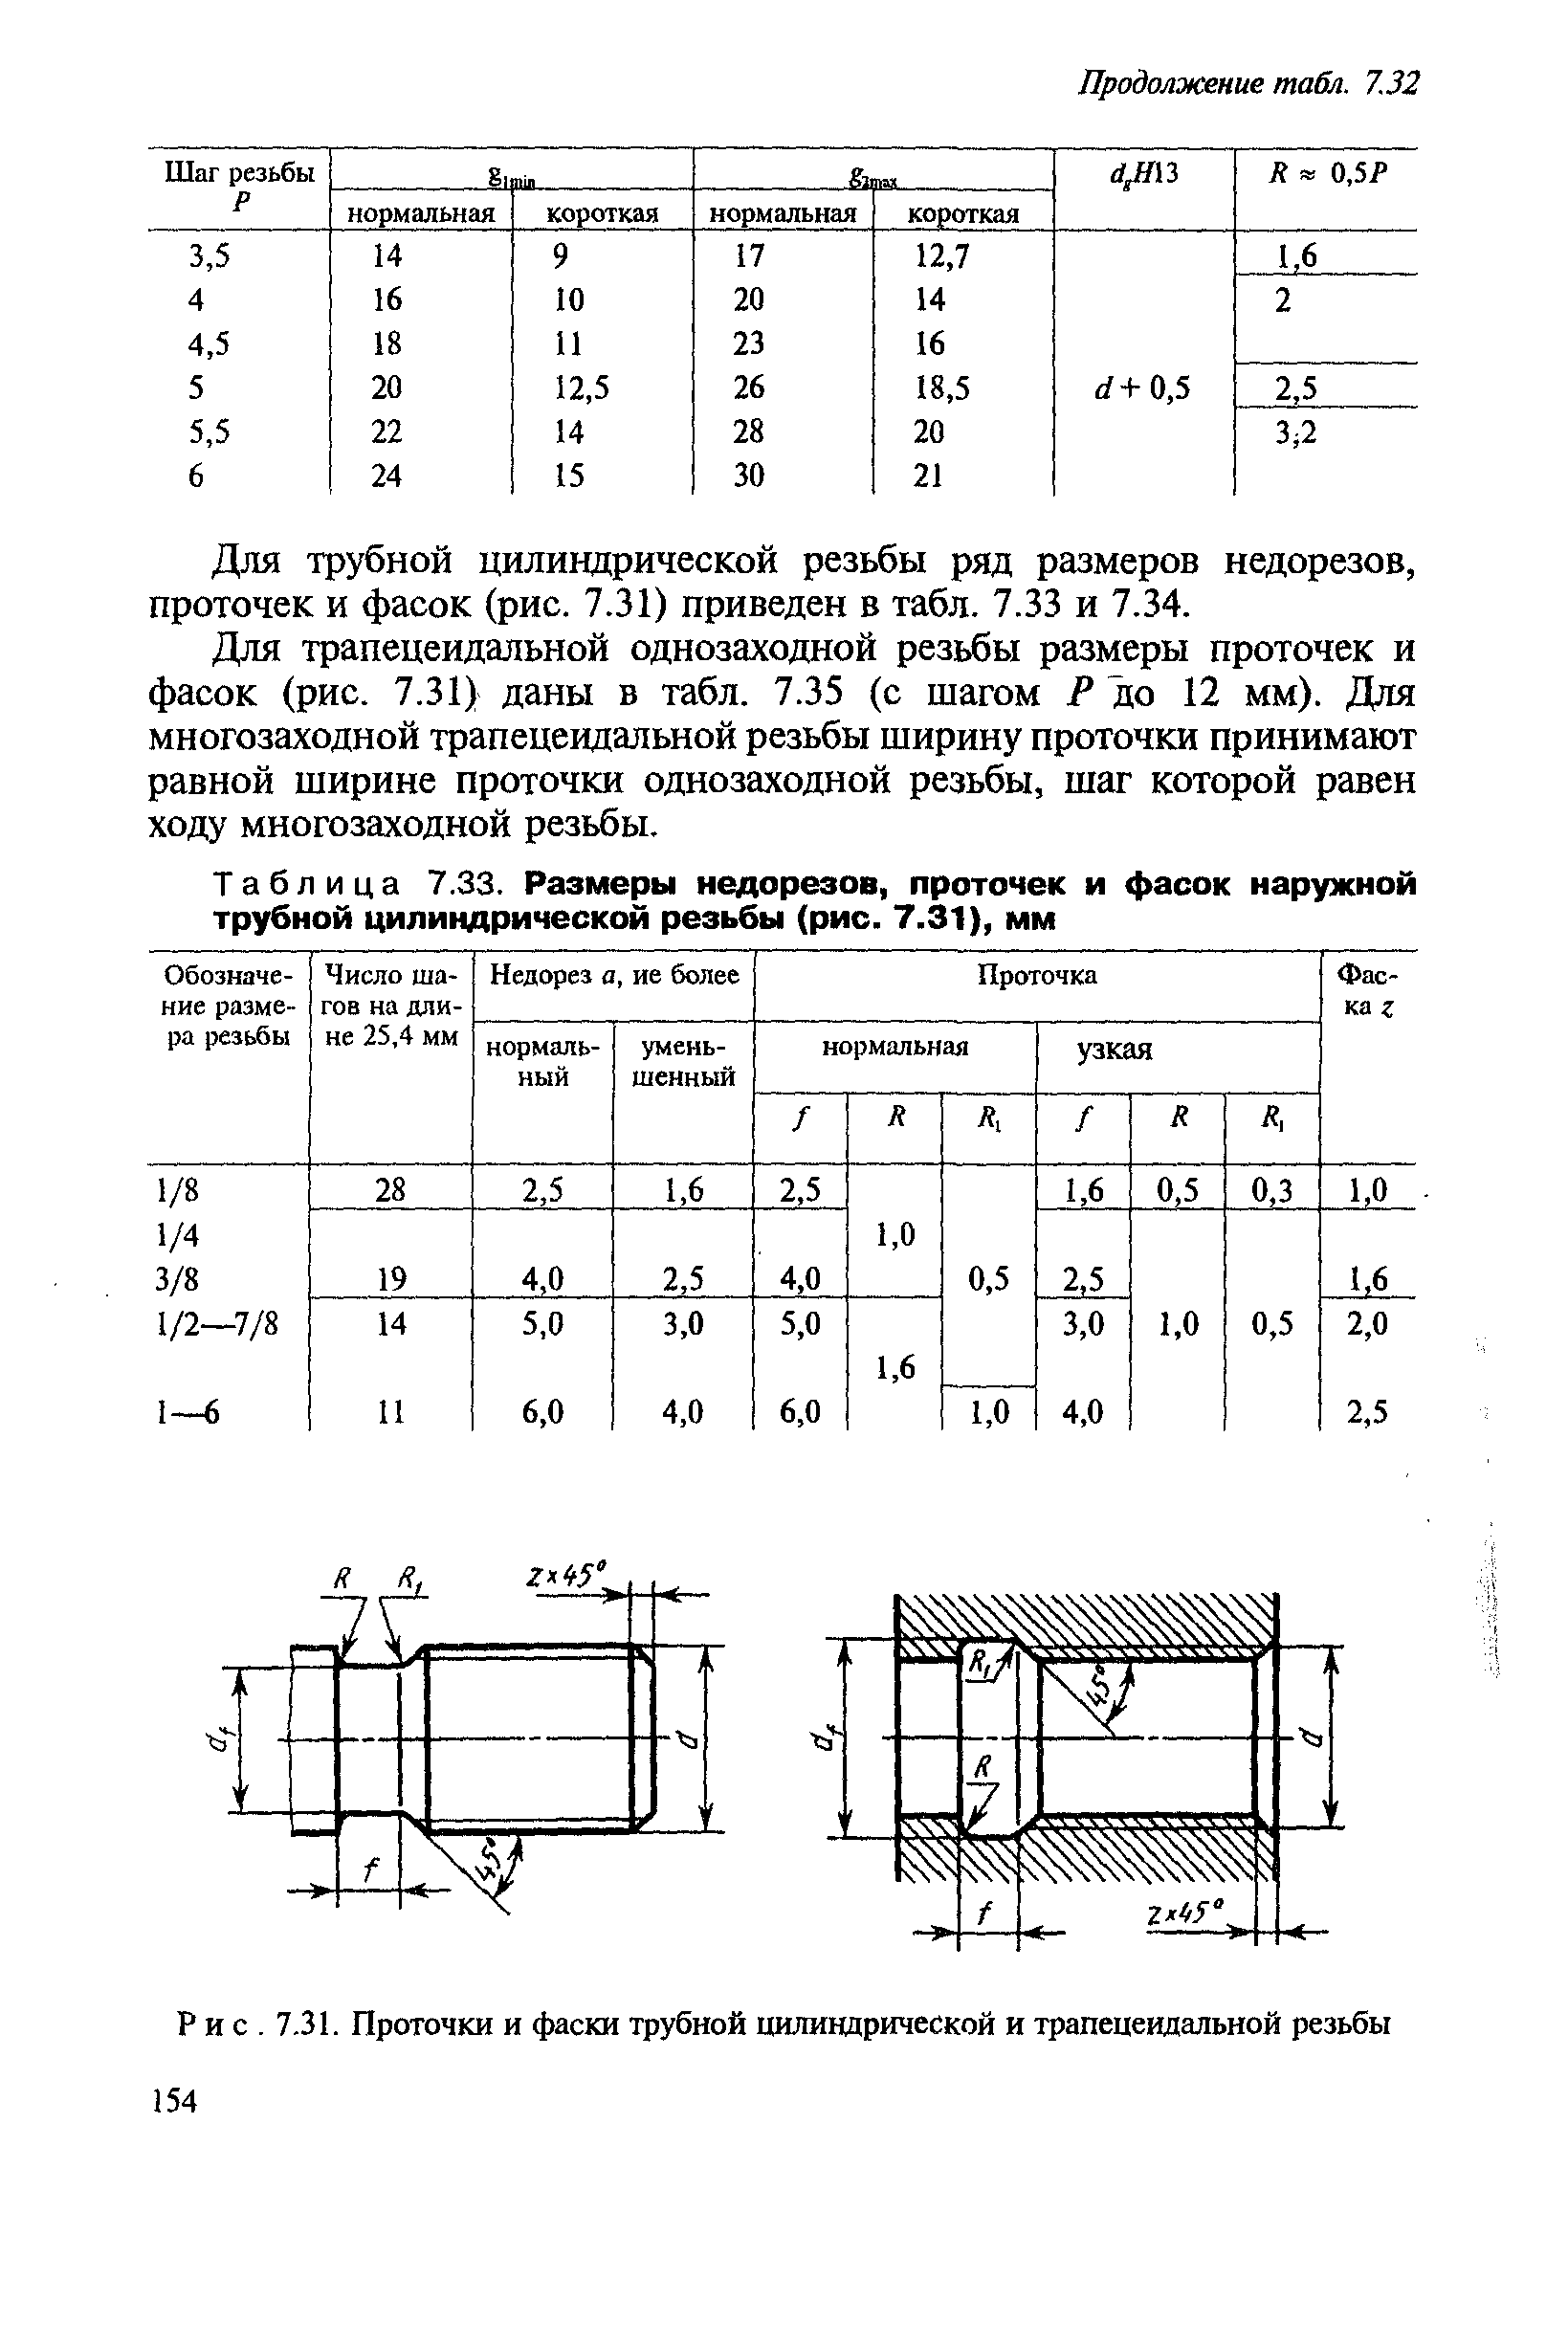 Таблица 7.33. Размеры недорезов, проточек и фасок наружной трубной цилиндрической резьбы (рис. 7.31), мм
